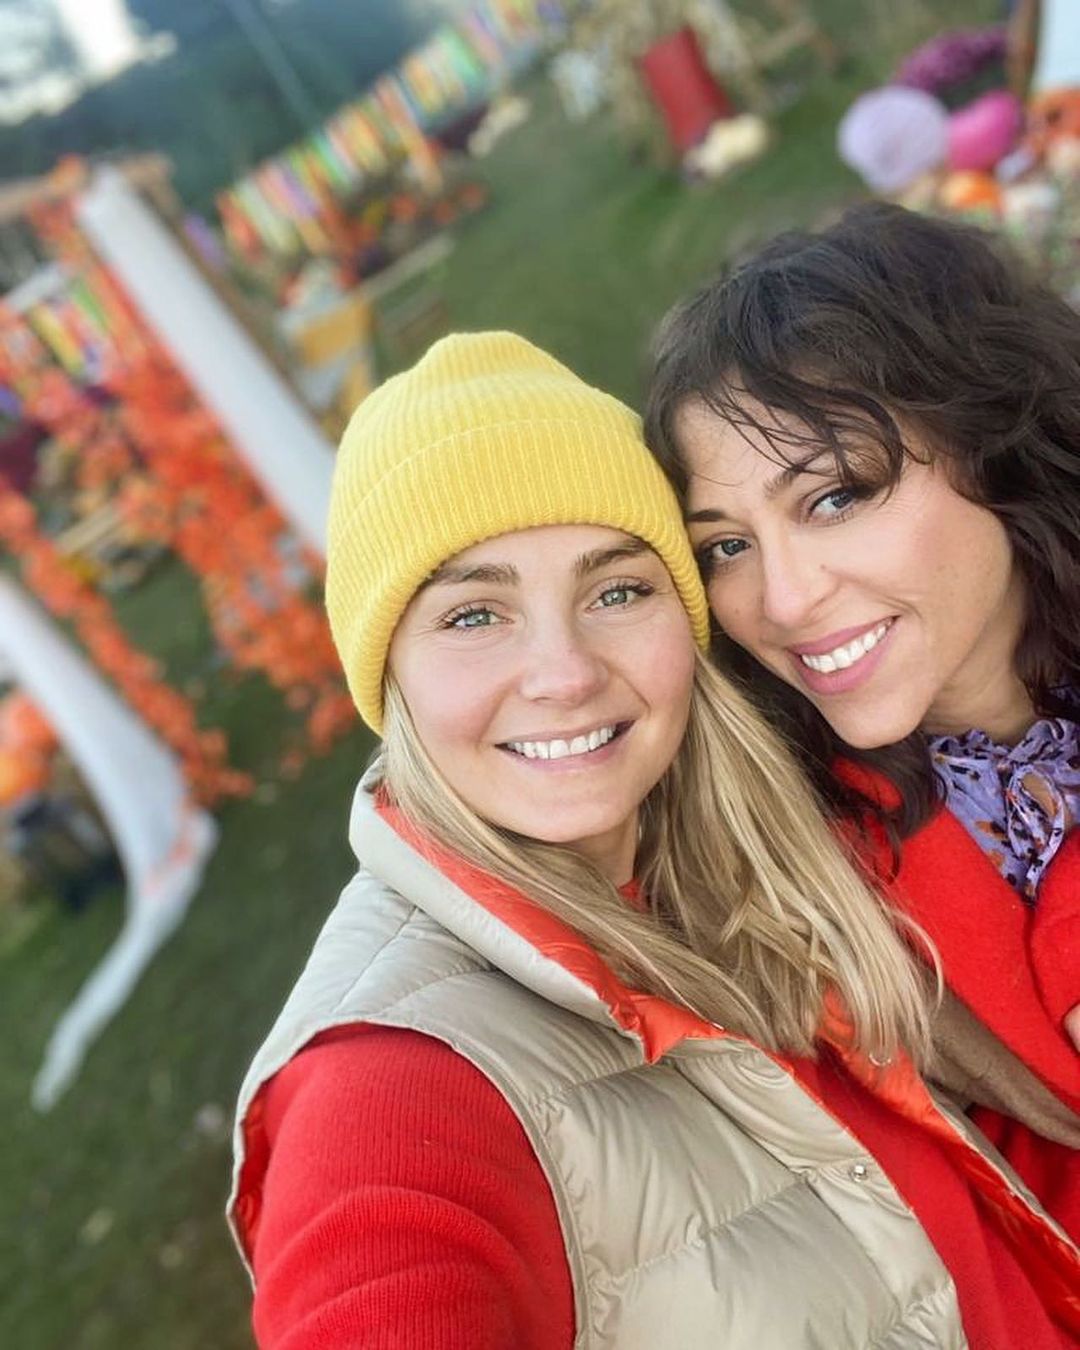 Gwiazdy, które świętują Halloween - Małgorzata Socha i Natalia Kukulska